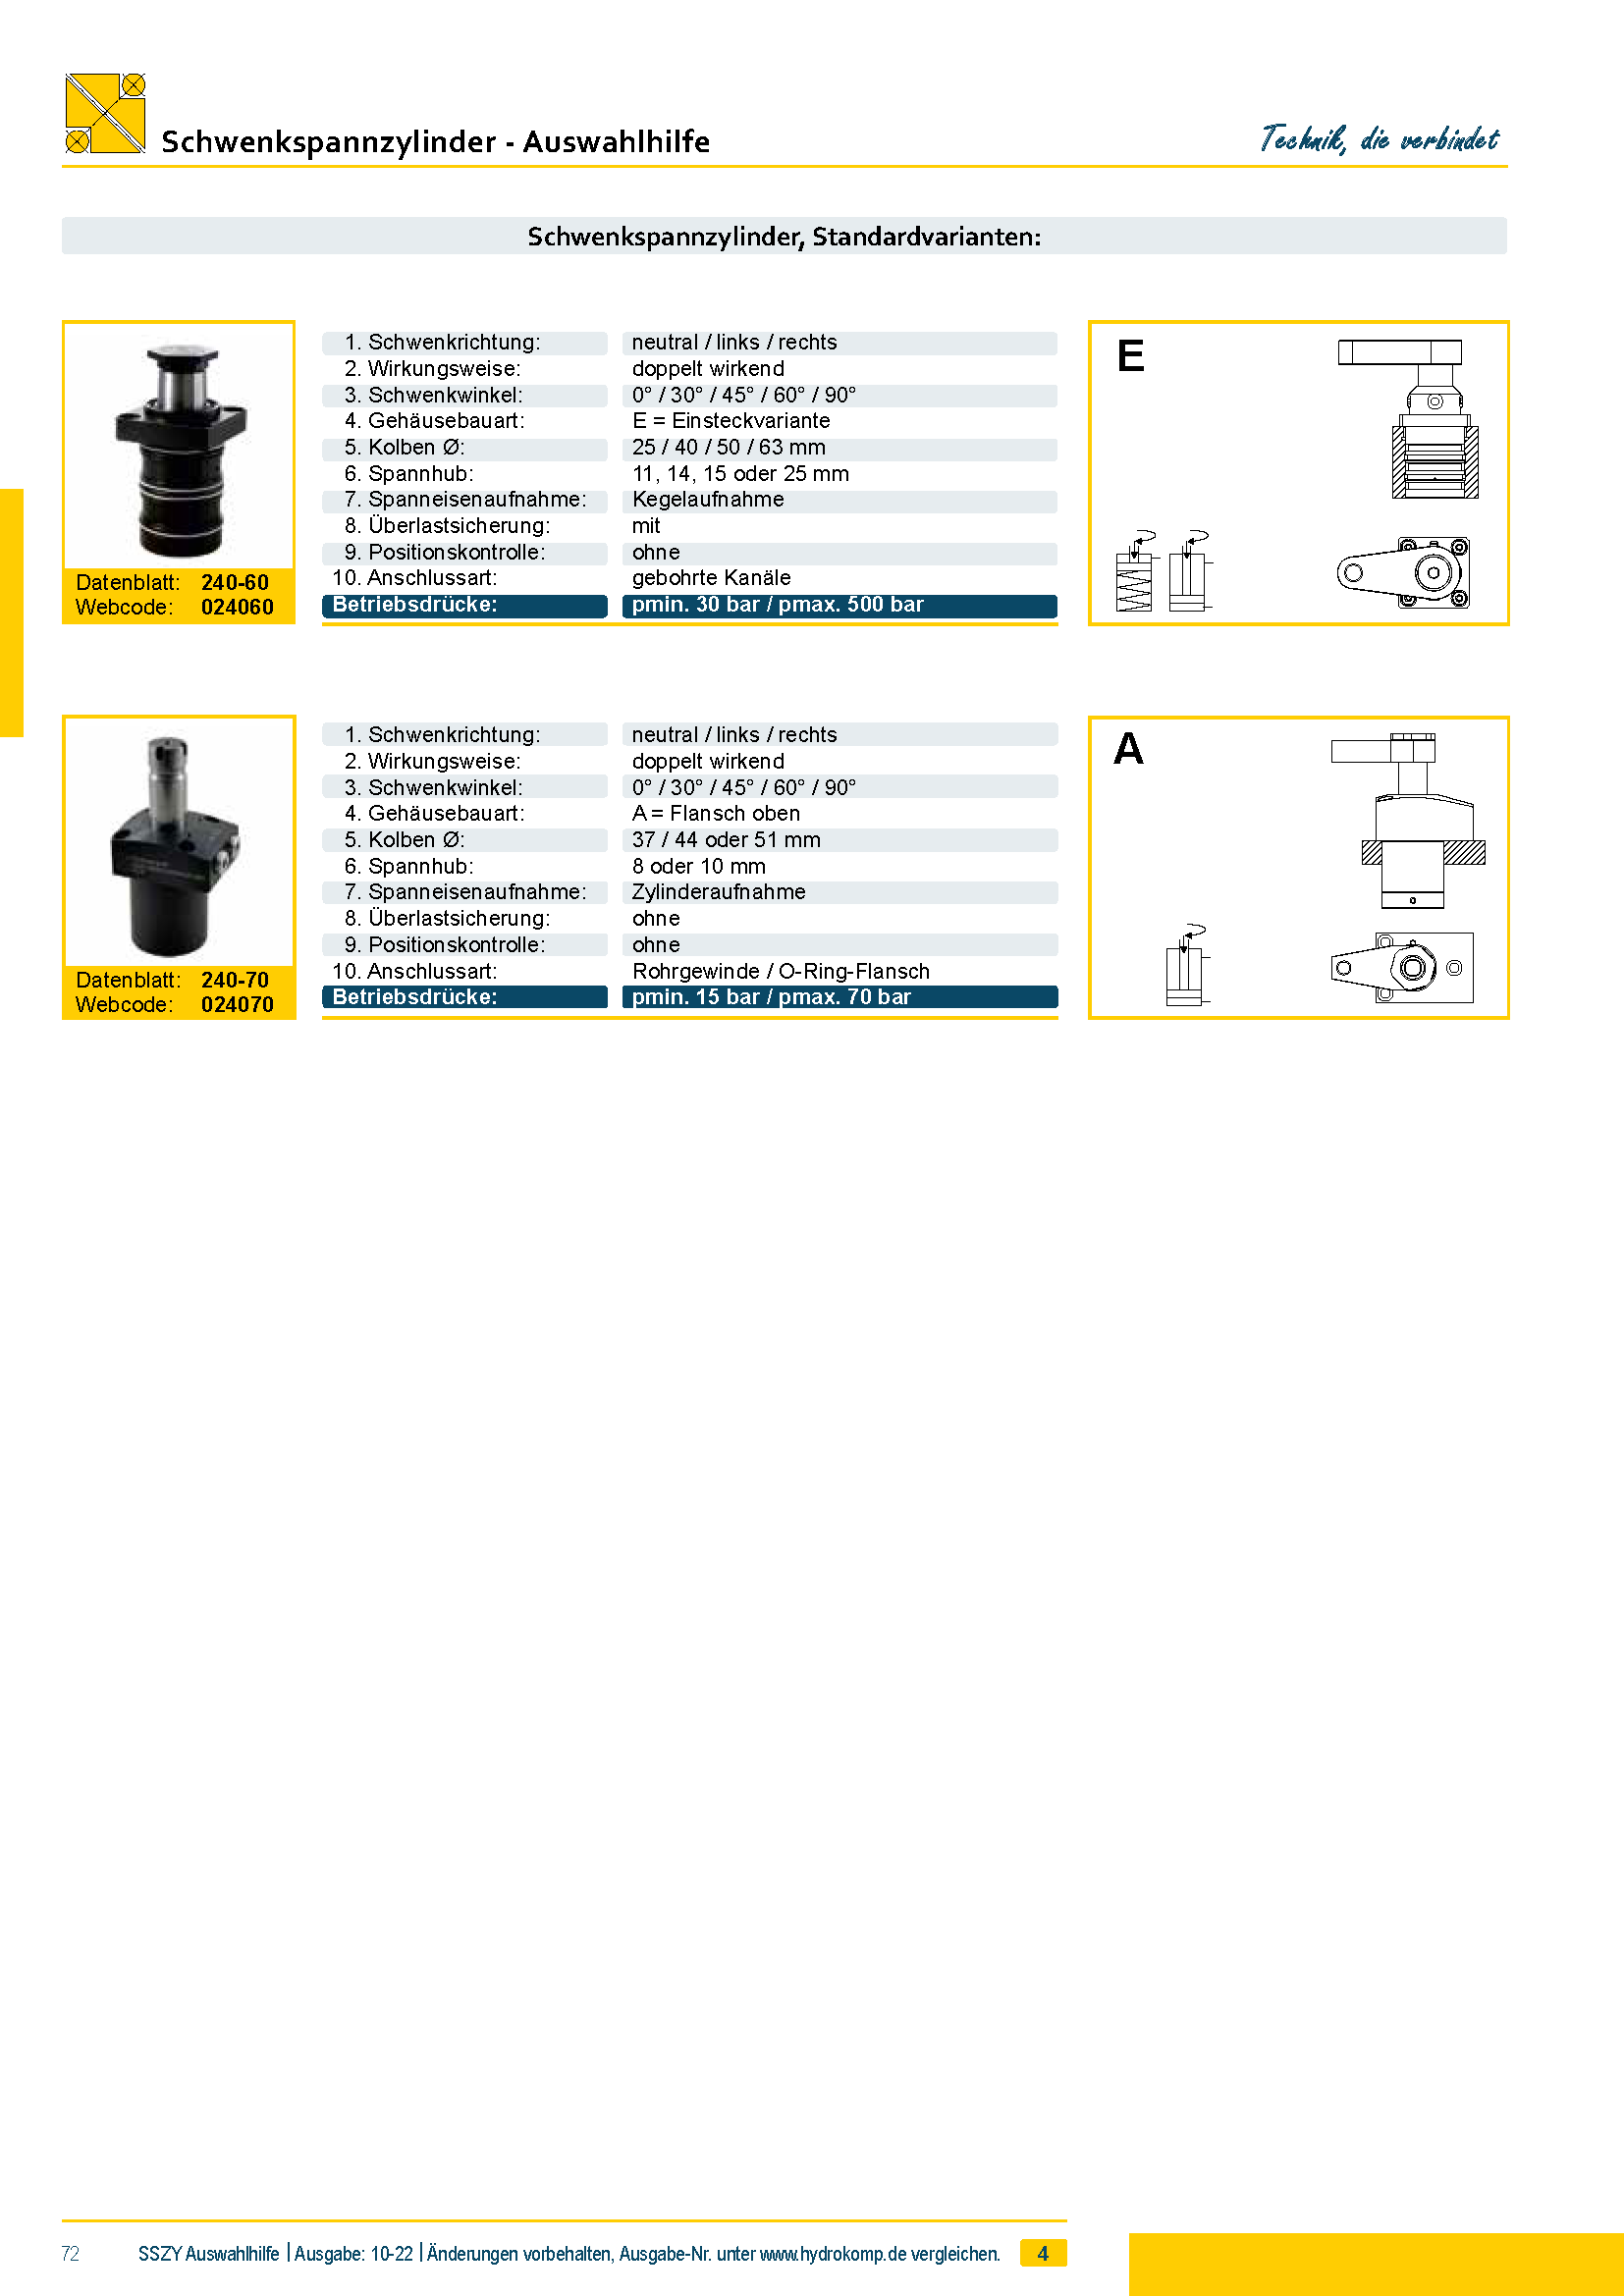 hydrokomp-schwenkspannzylinder-auswahlhilfe-4